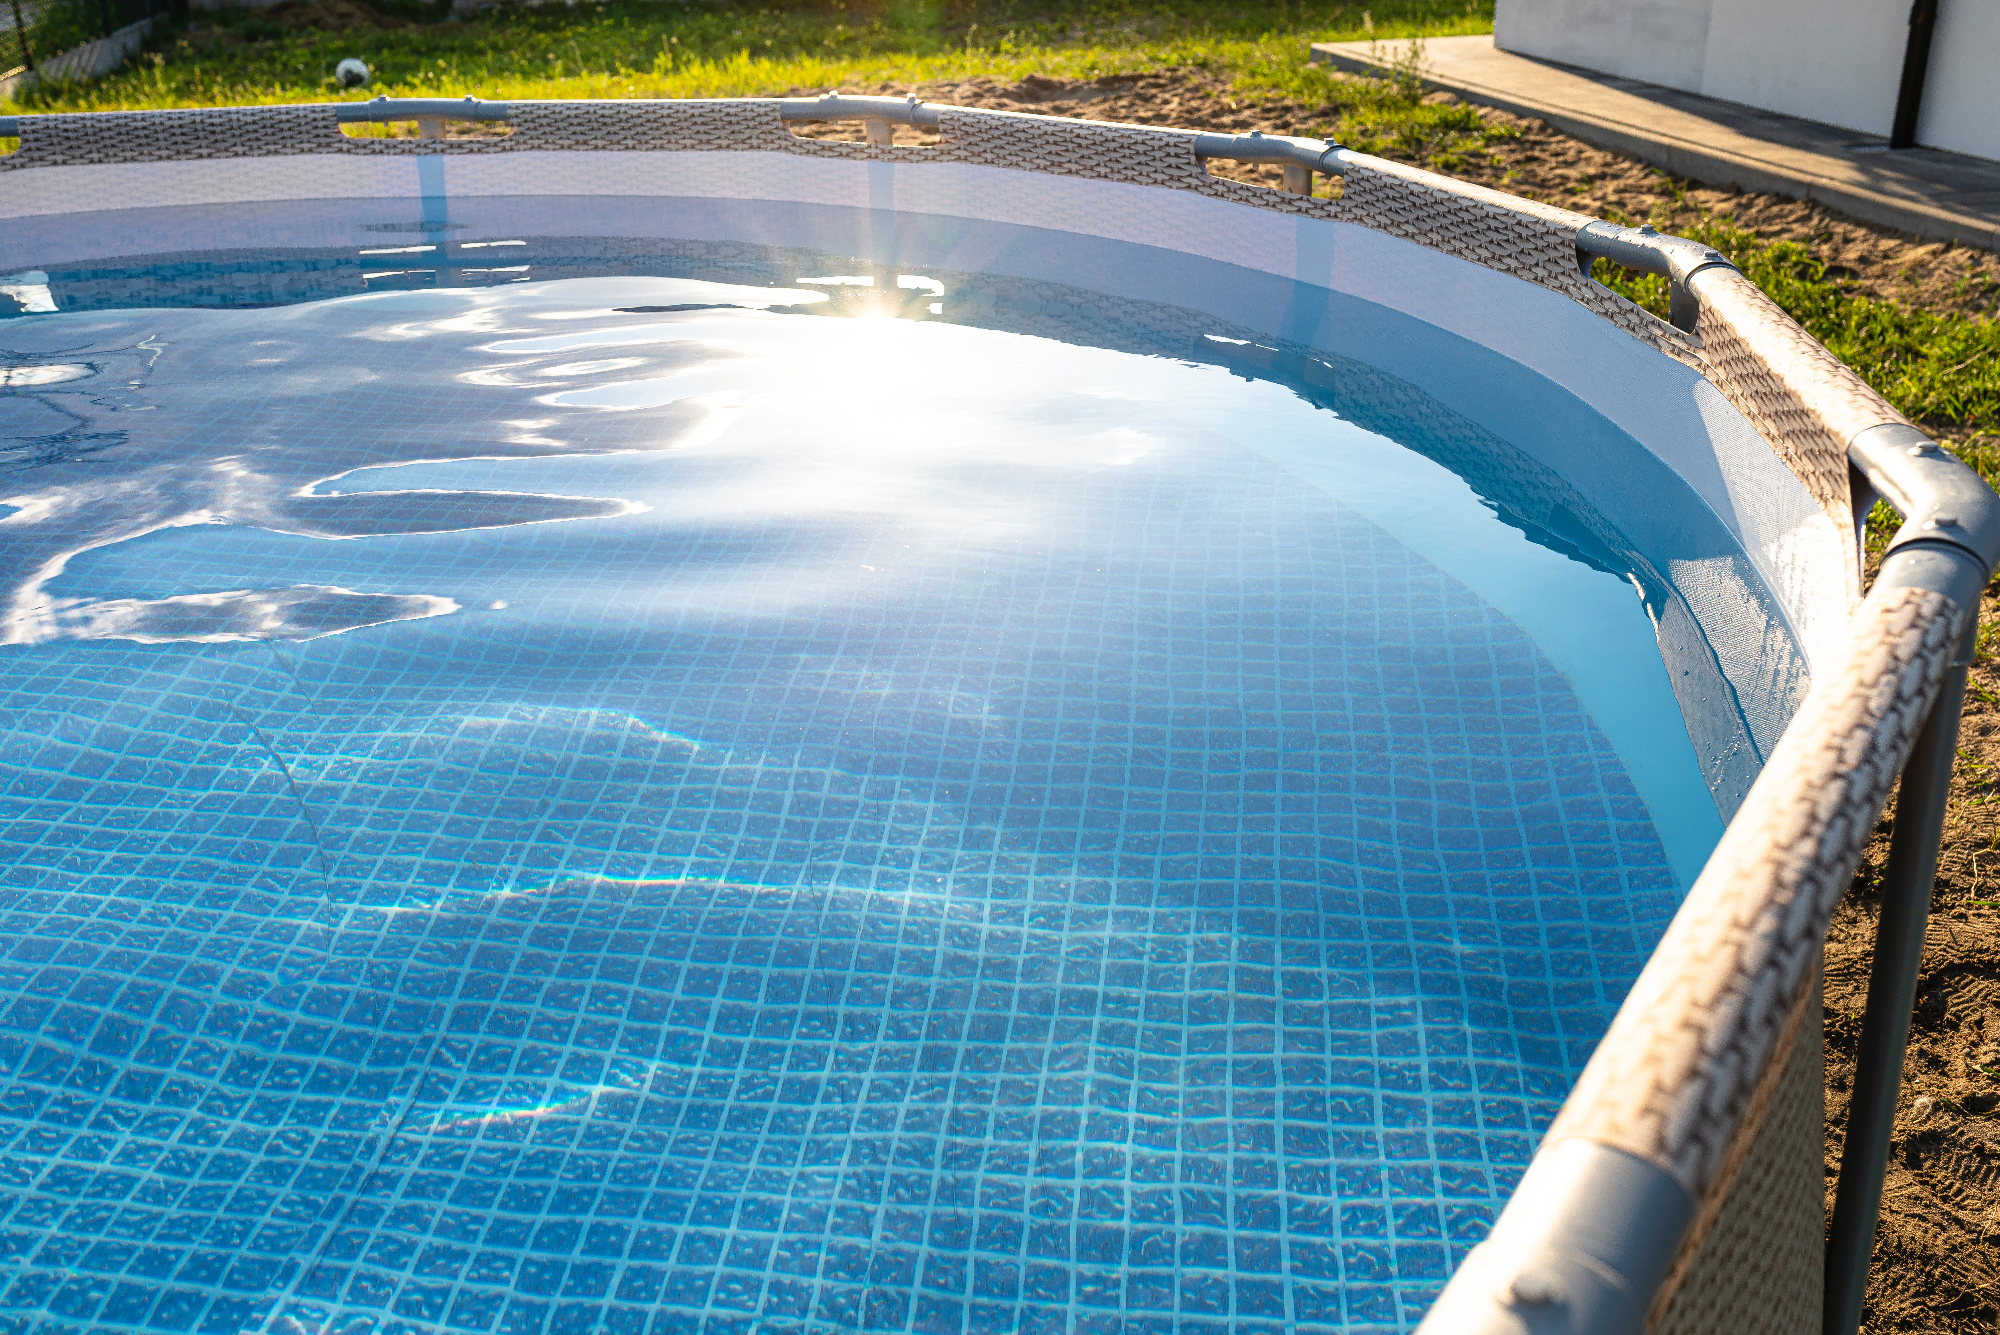 Bazeni Intex so odlični za družine, ki potrebujejo večji bazen